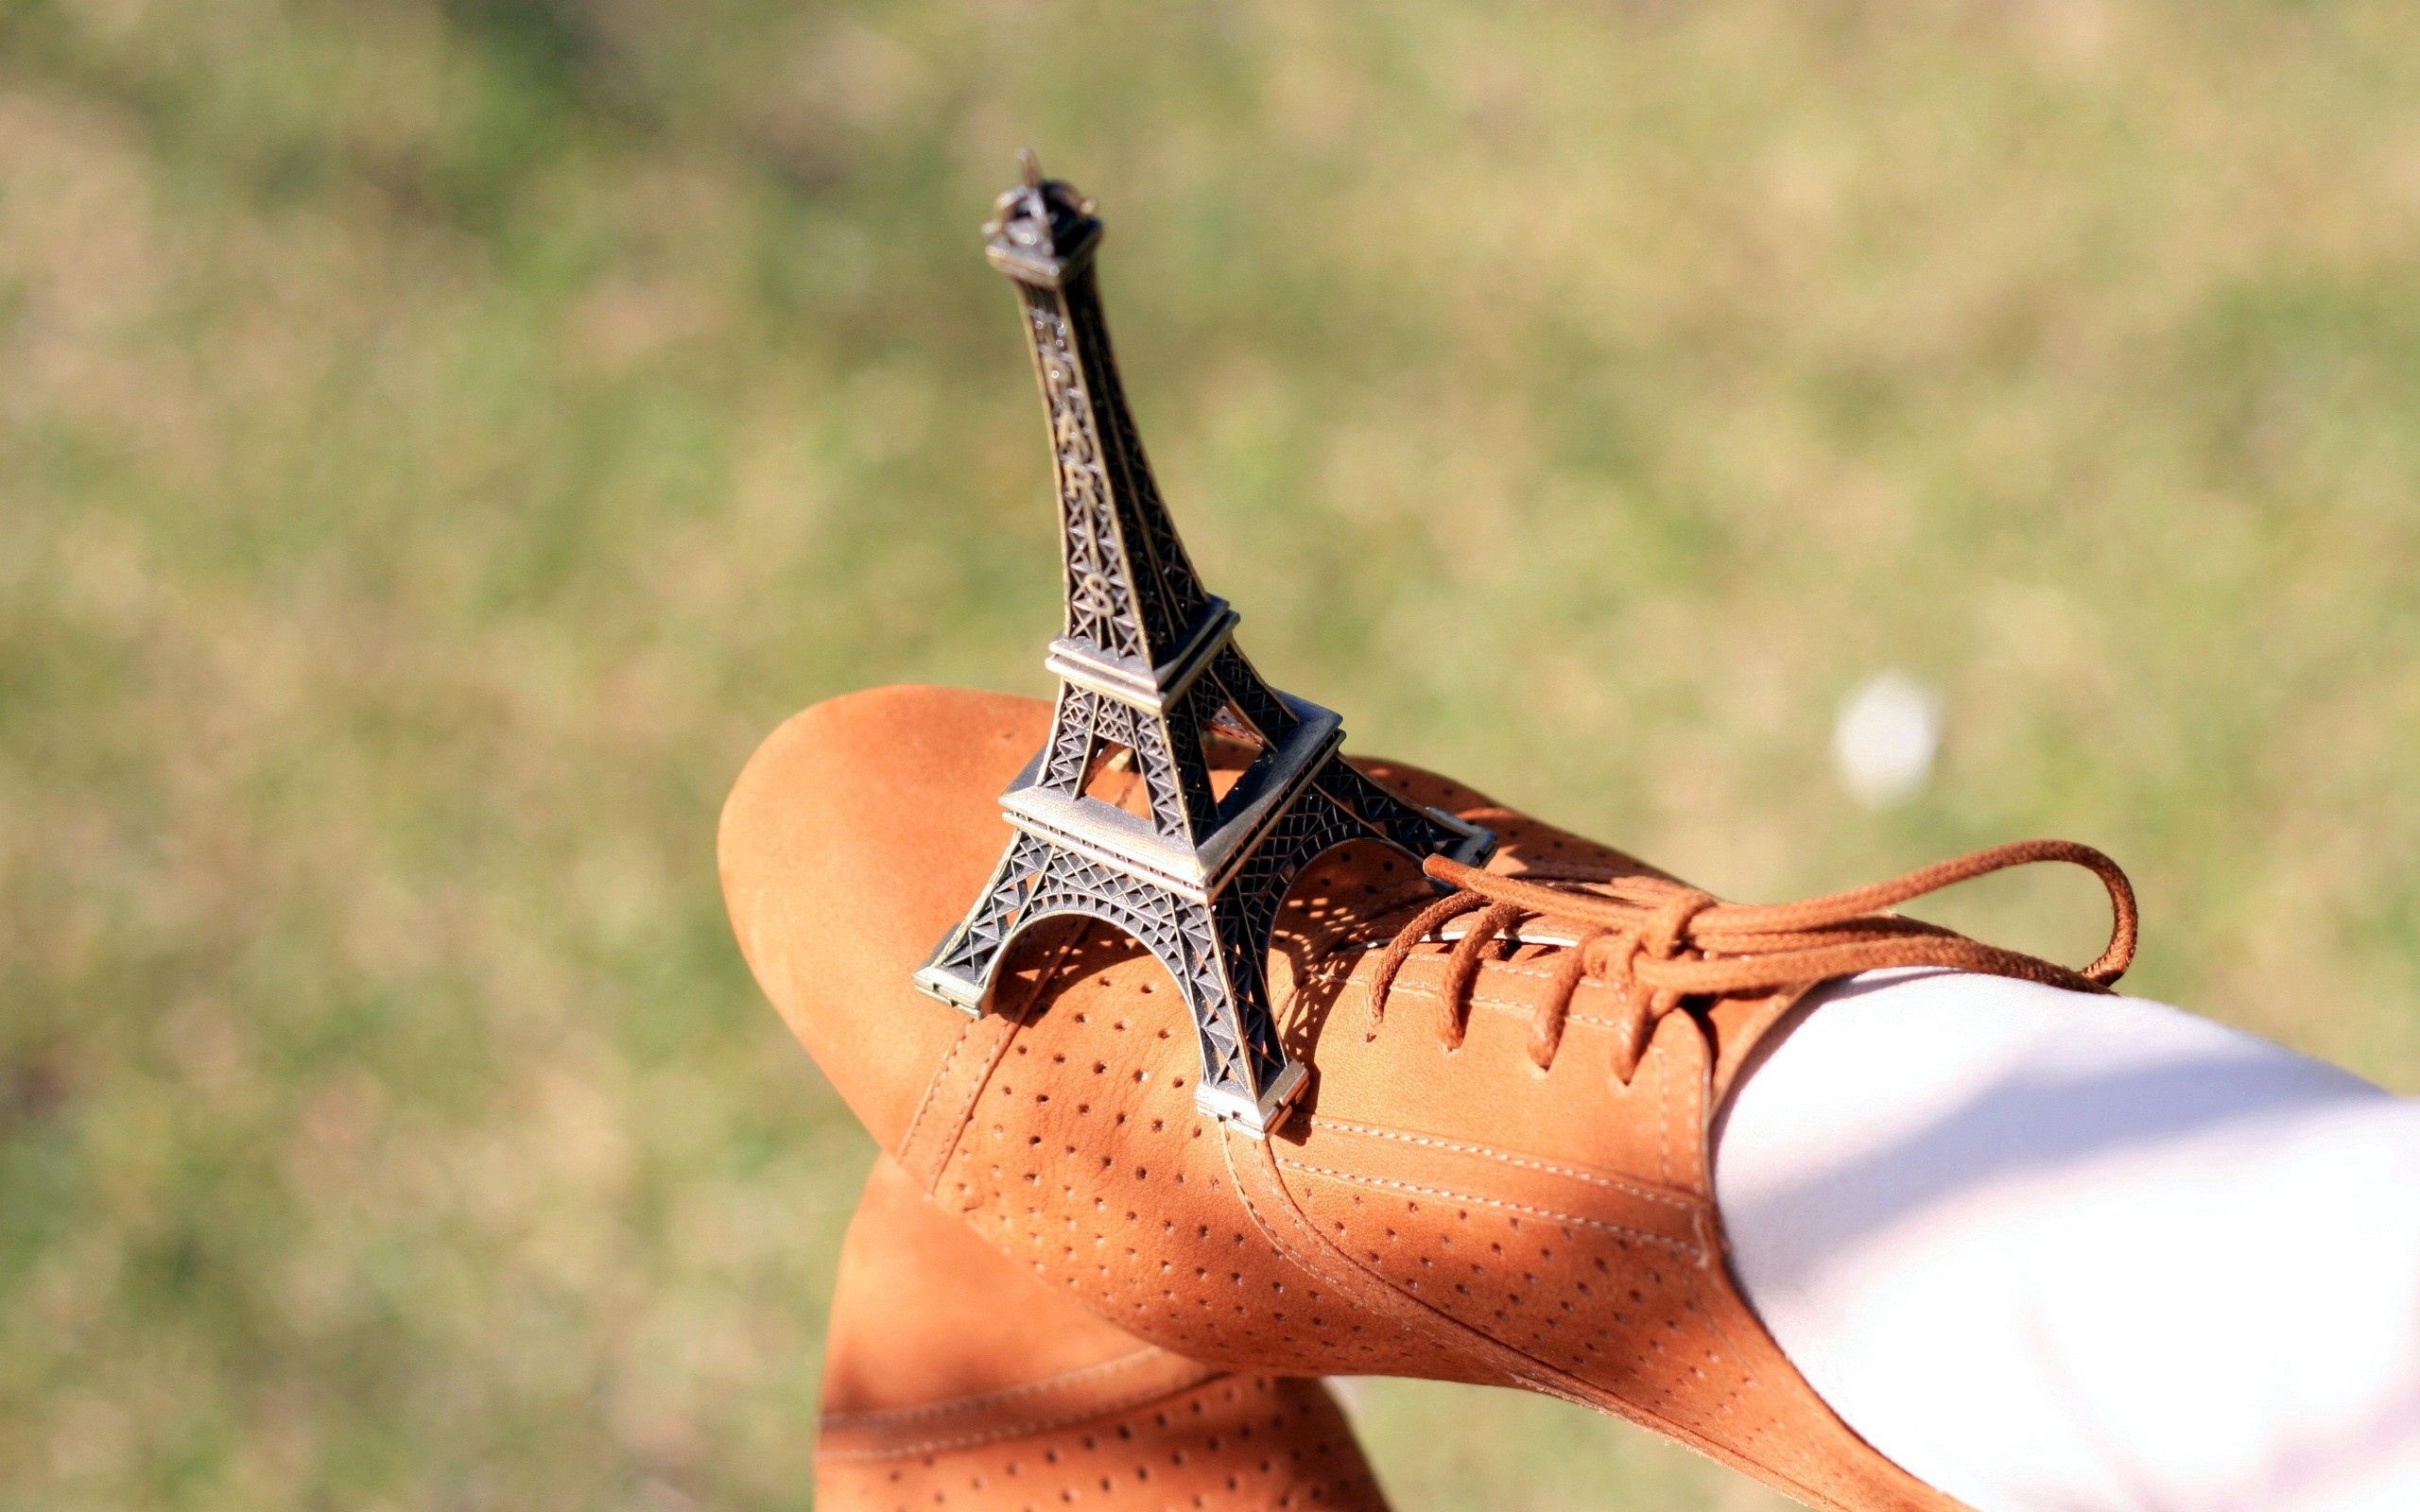 145674 Salvapantallas y fondos de pantalla Torre Eiffel en tu teléfono. Descarga imágenes de calzado, misceláneo, cordones, miscelánea gratis